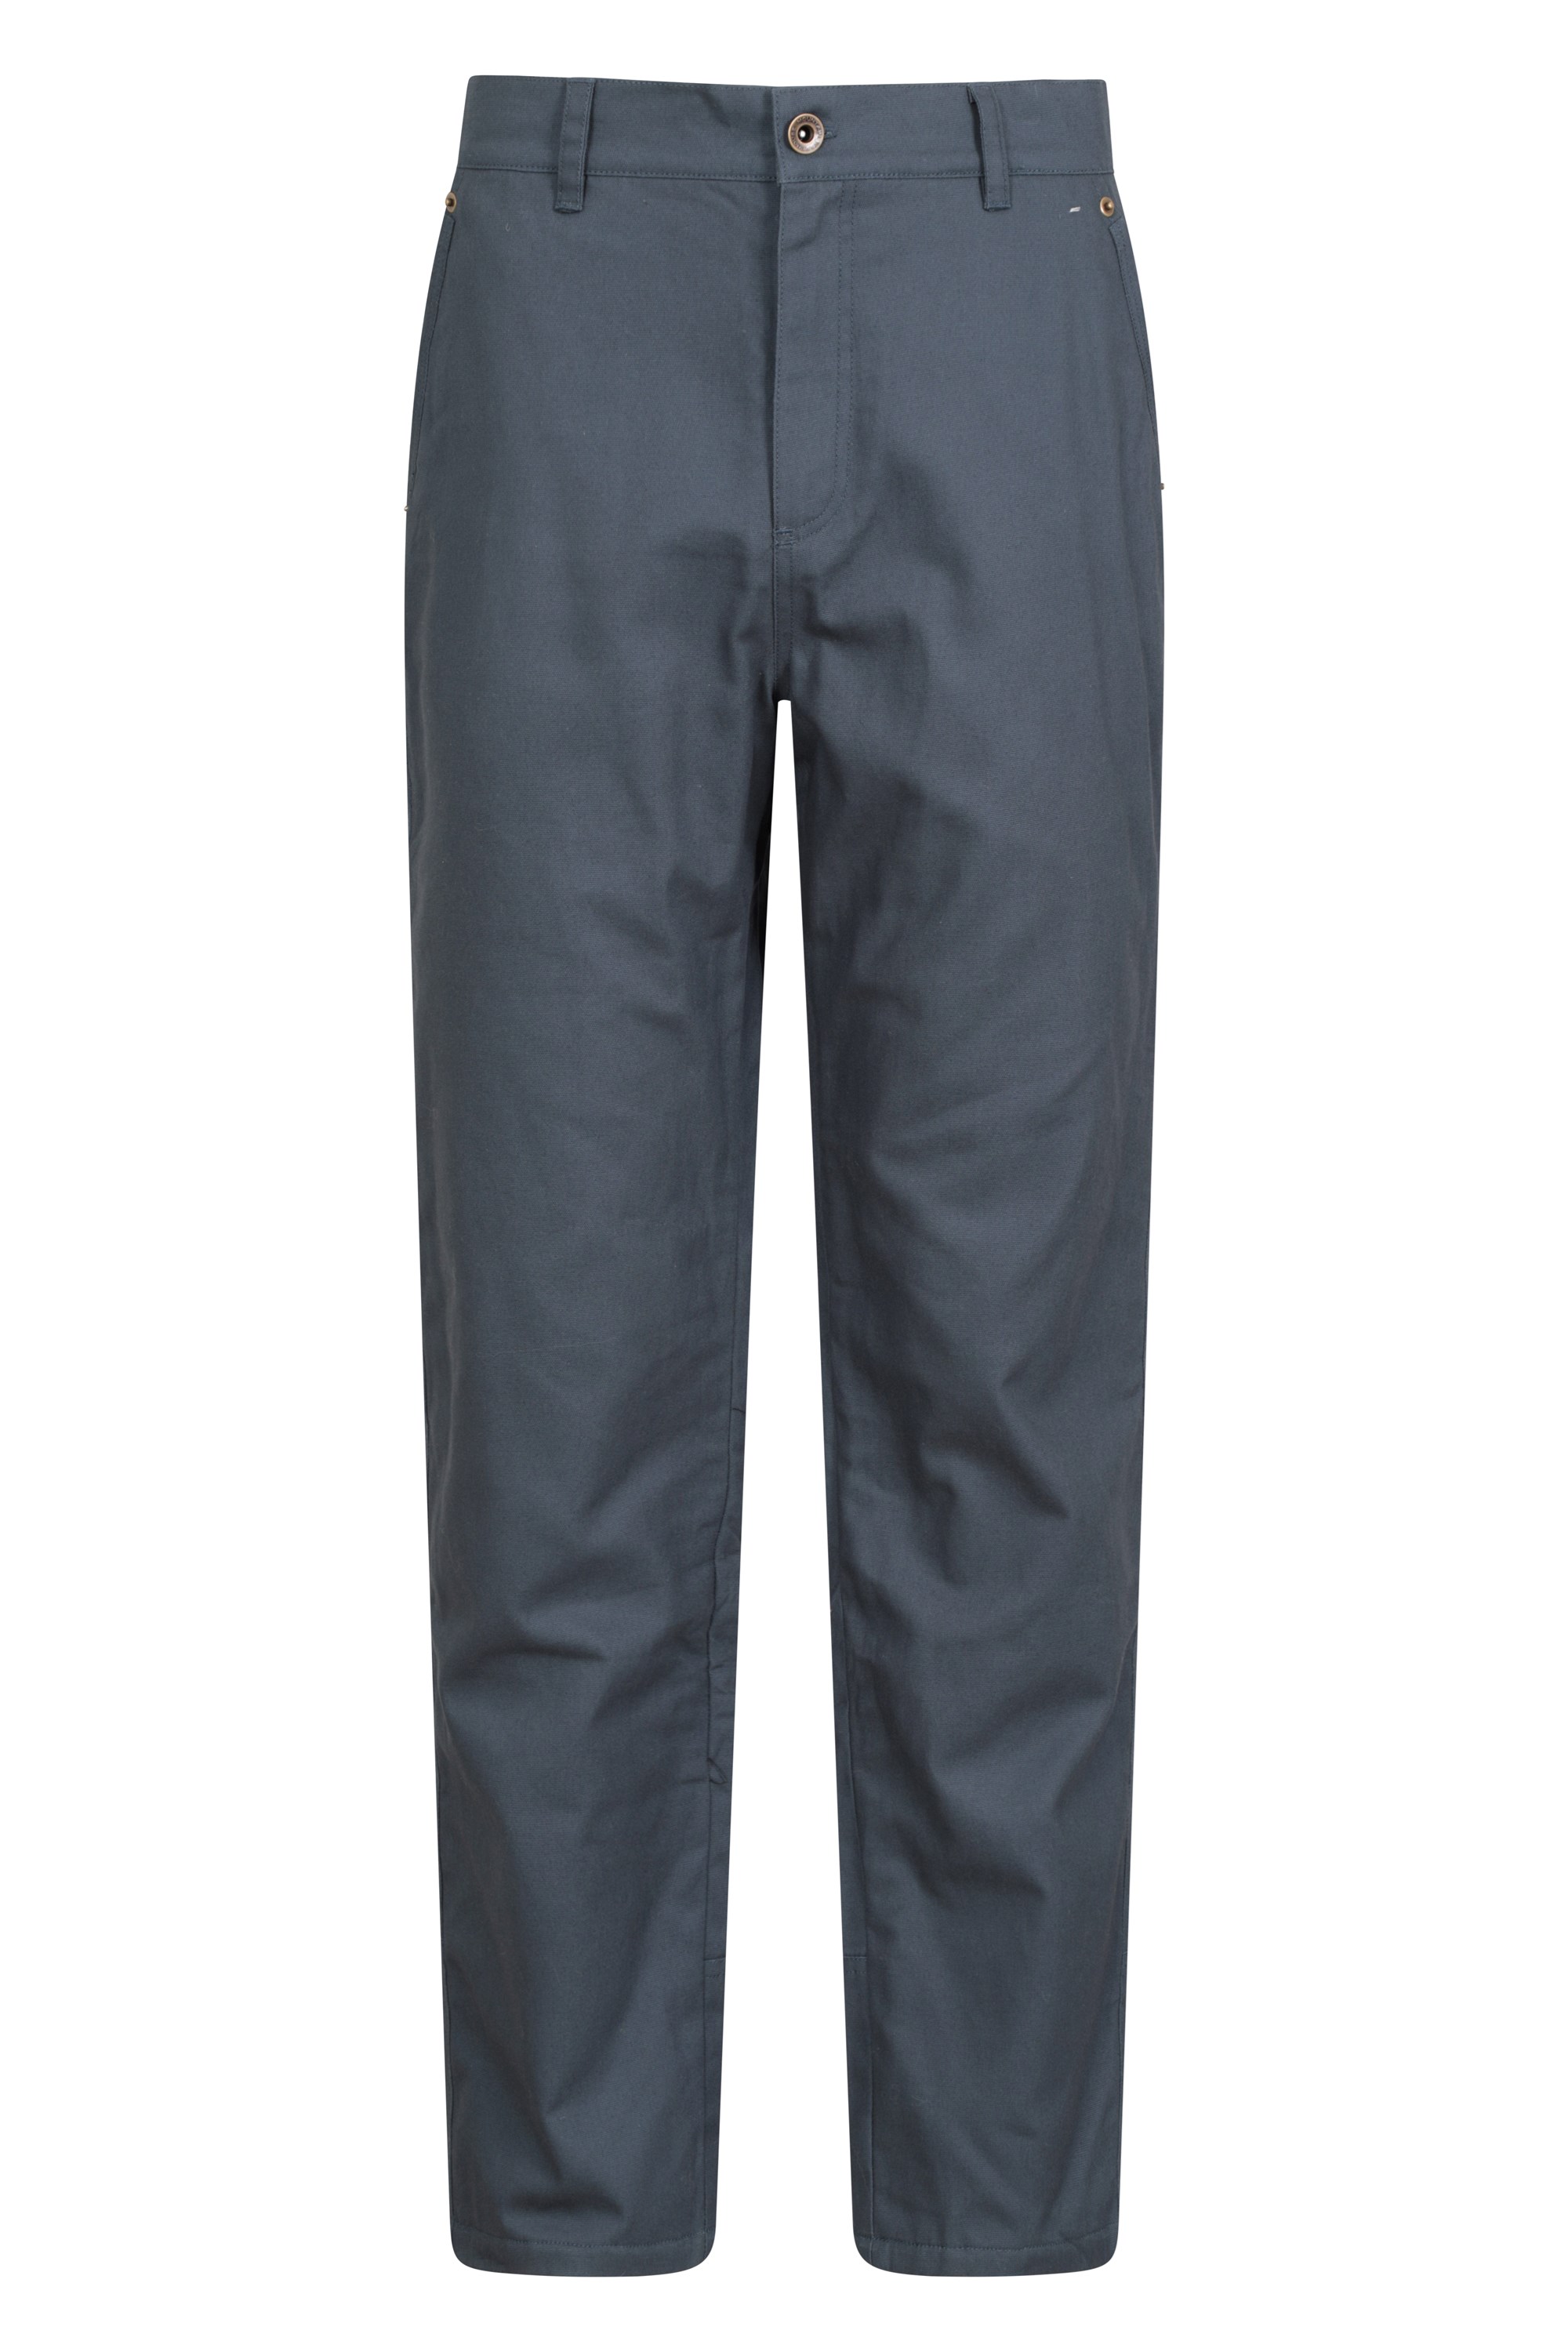 Update 75+ fleece lined trousers best - in.duhocakina